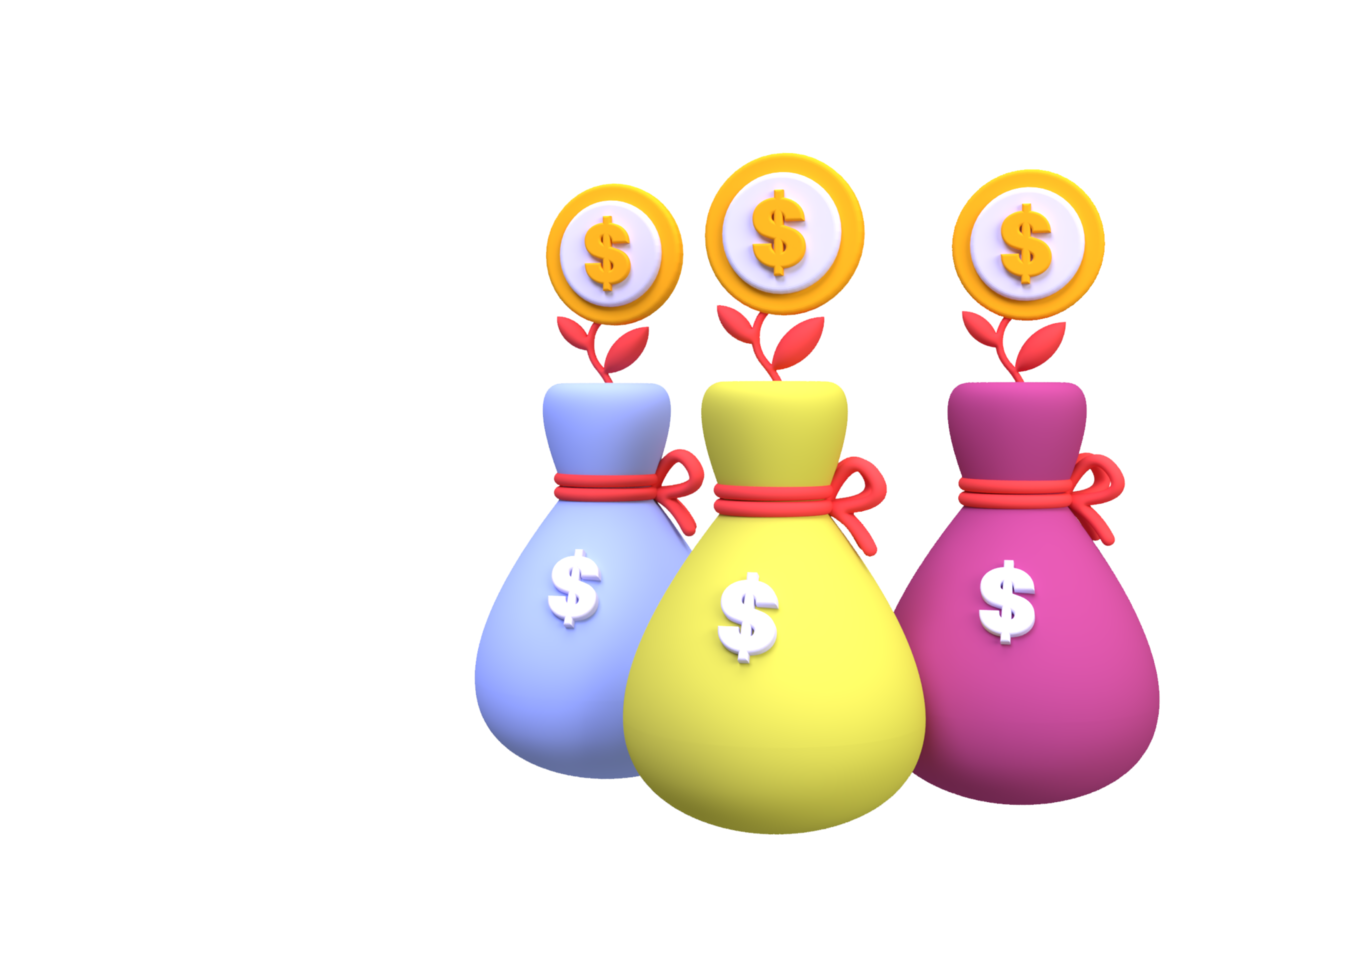 bolsa de dinero y pila de monedas fondo de ilustración, 3d, icono de renderizado para negocios png